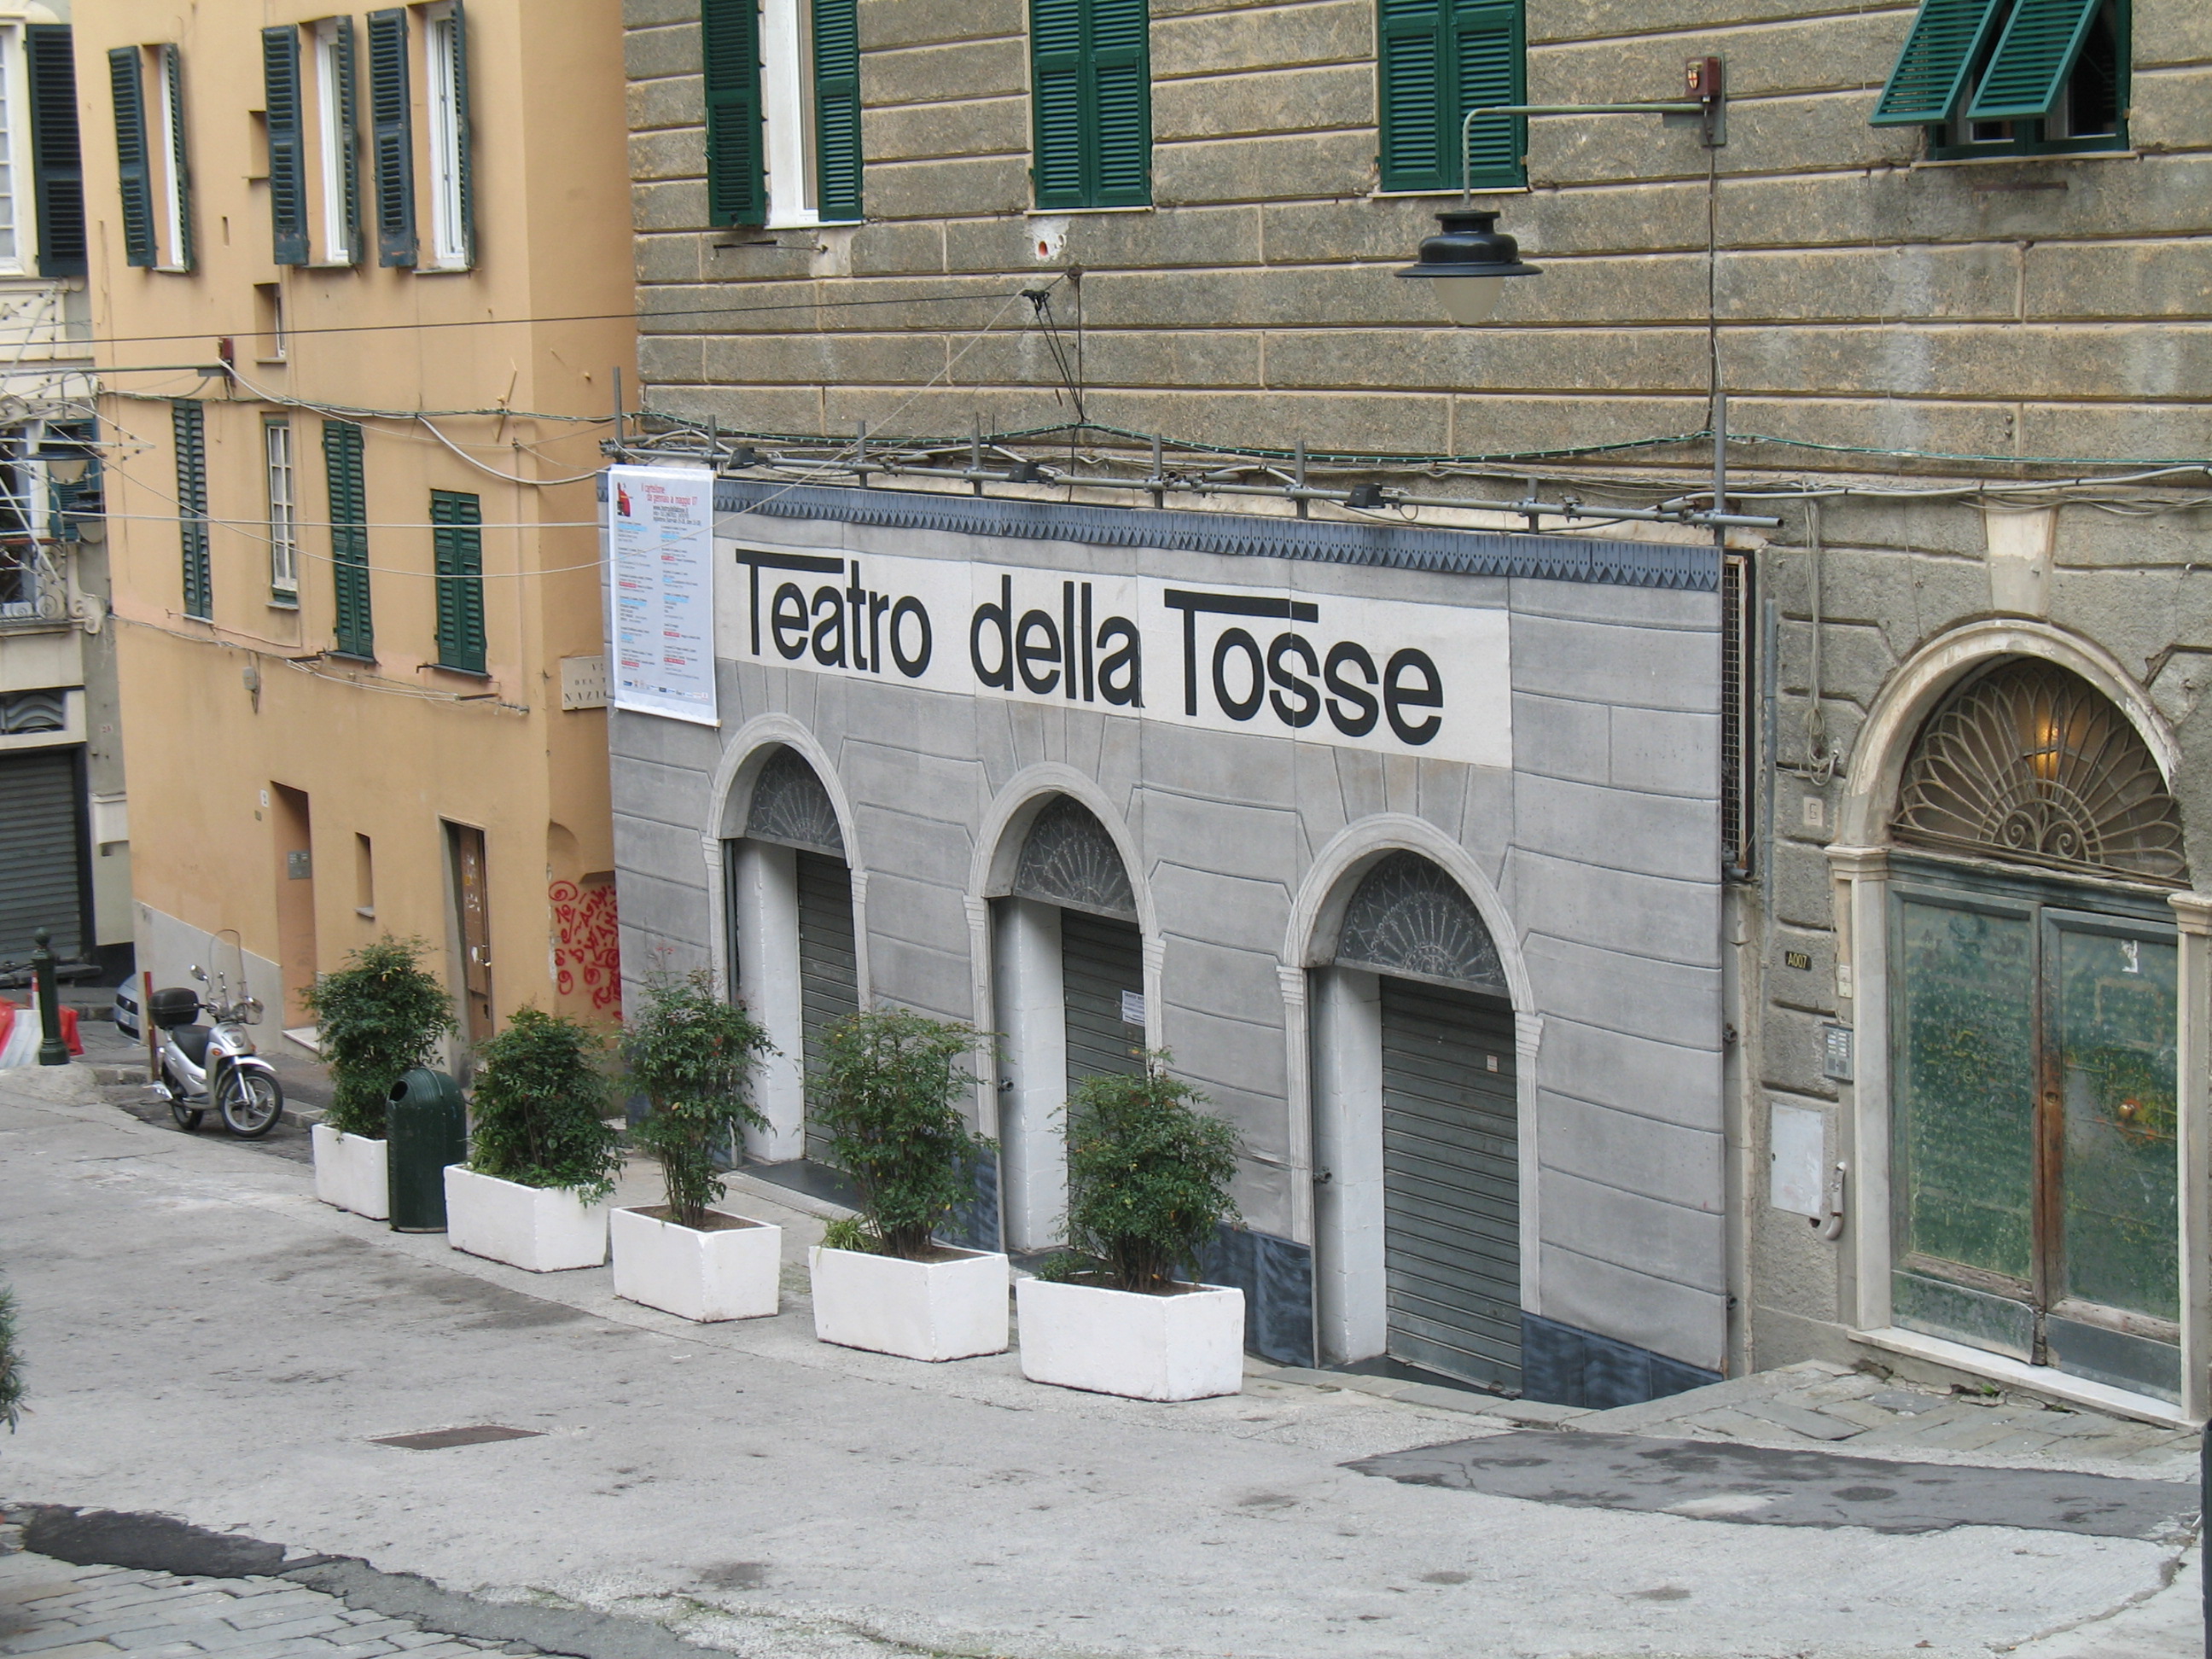 Teatro della Tosse - Wikipedia